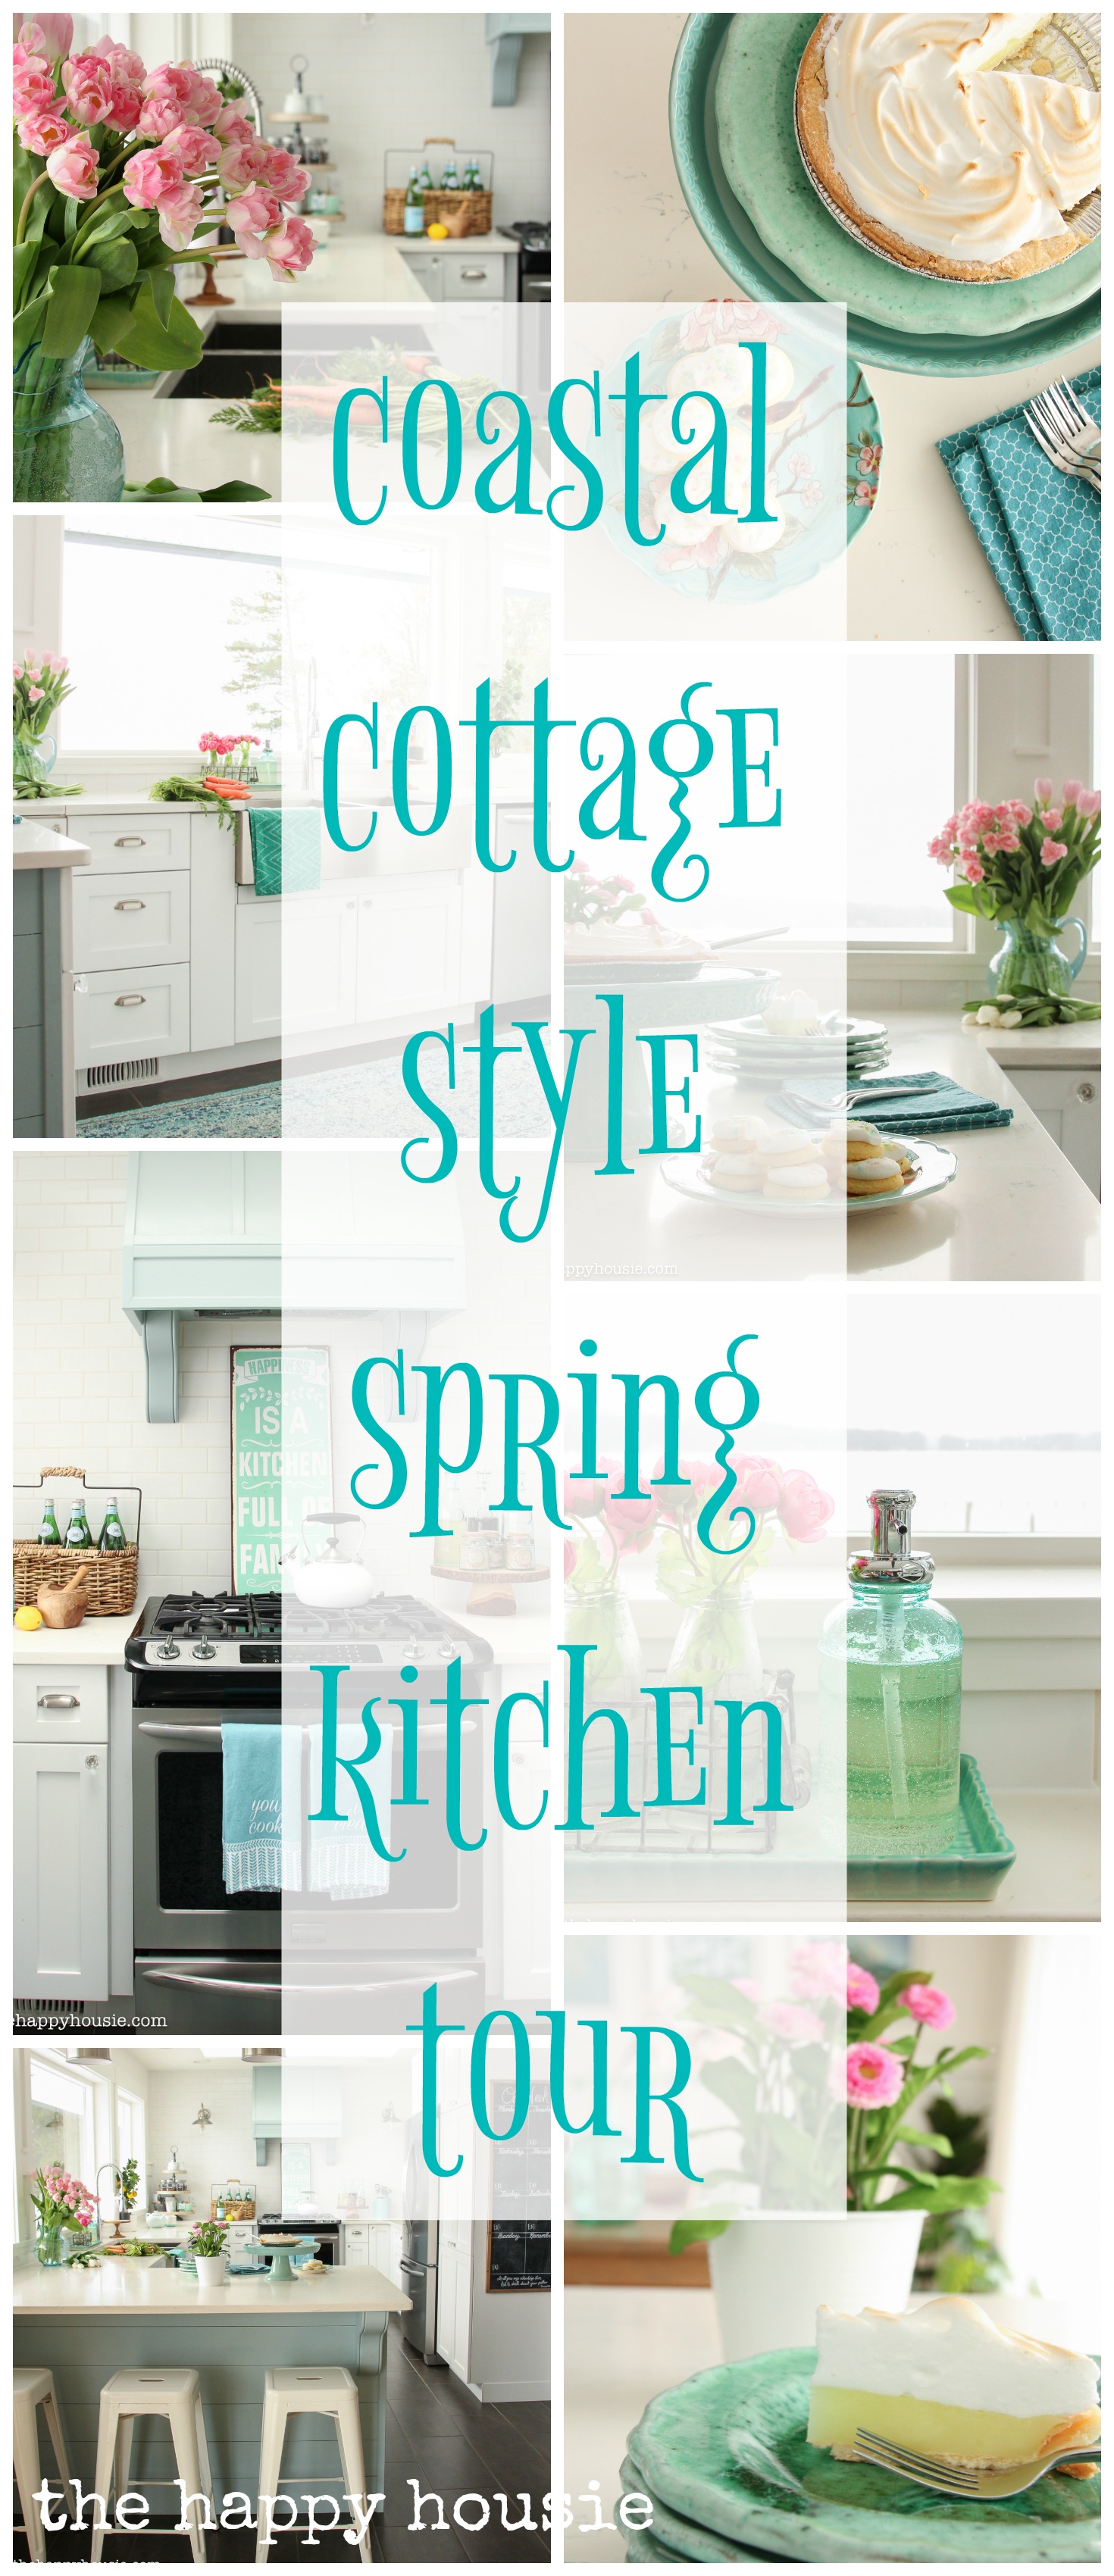 Coastal Cottage Style Spring Kitchen Tour poster.